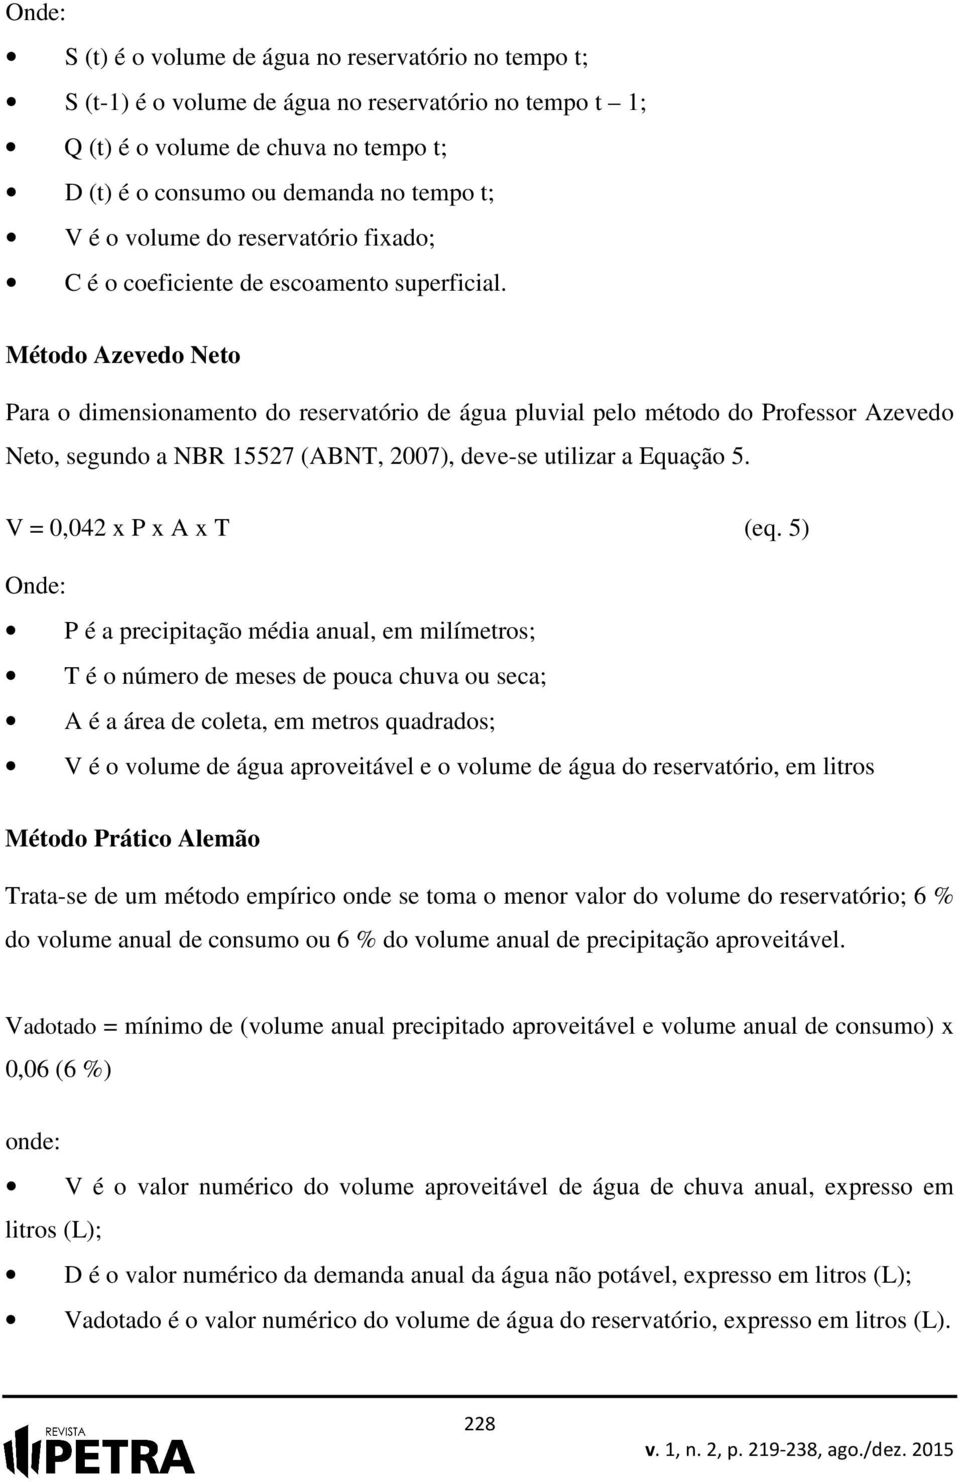 Método Azevedo Neto Para o dimensionamento do reservatório de água pluvial pelo método do Professor Azevedo Neto, segundo a NBR 15527 (ABNT, 2007), deve-se utilizar a Equação 5.